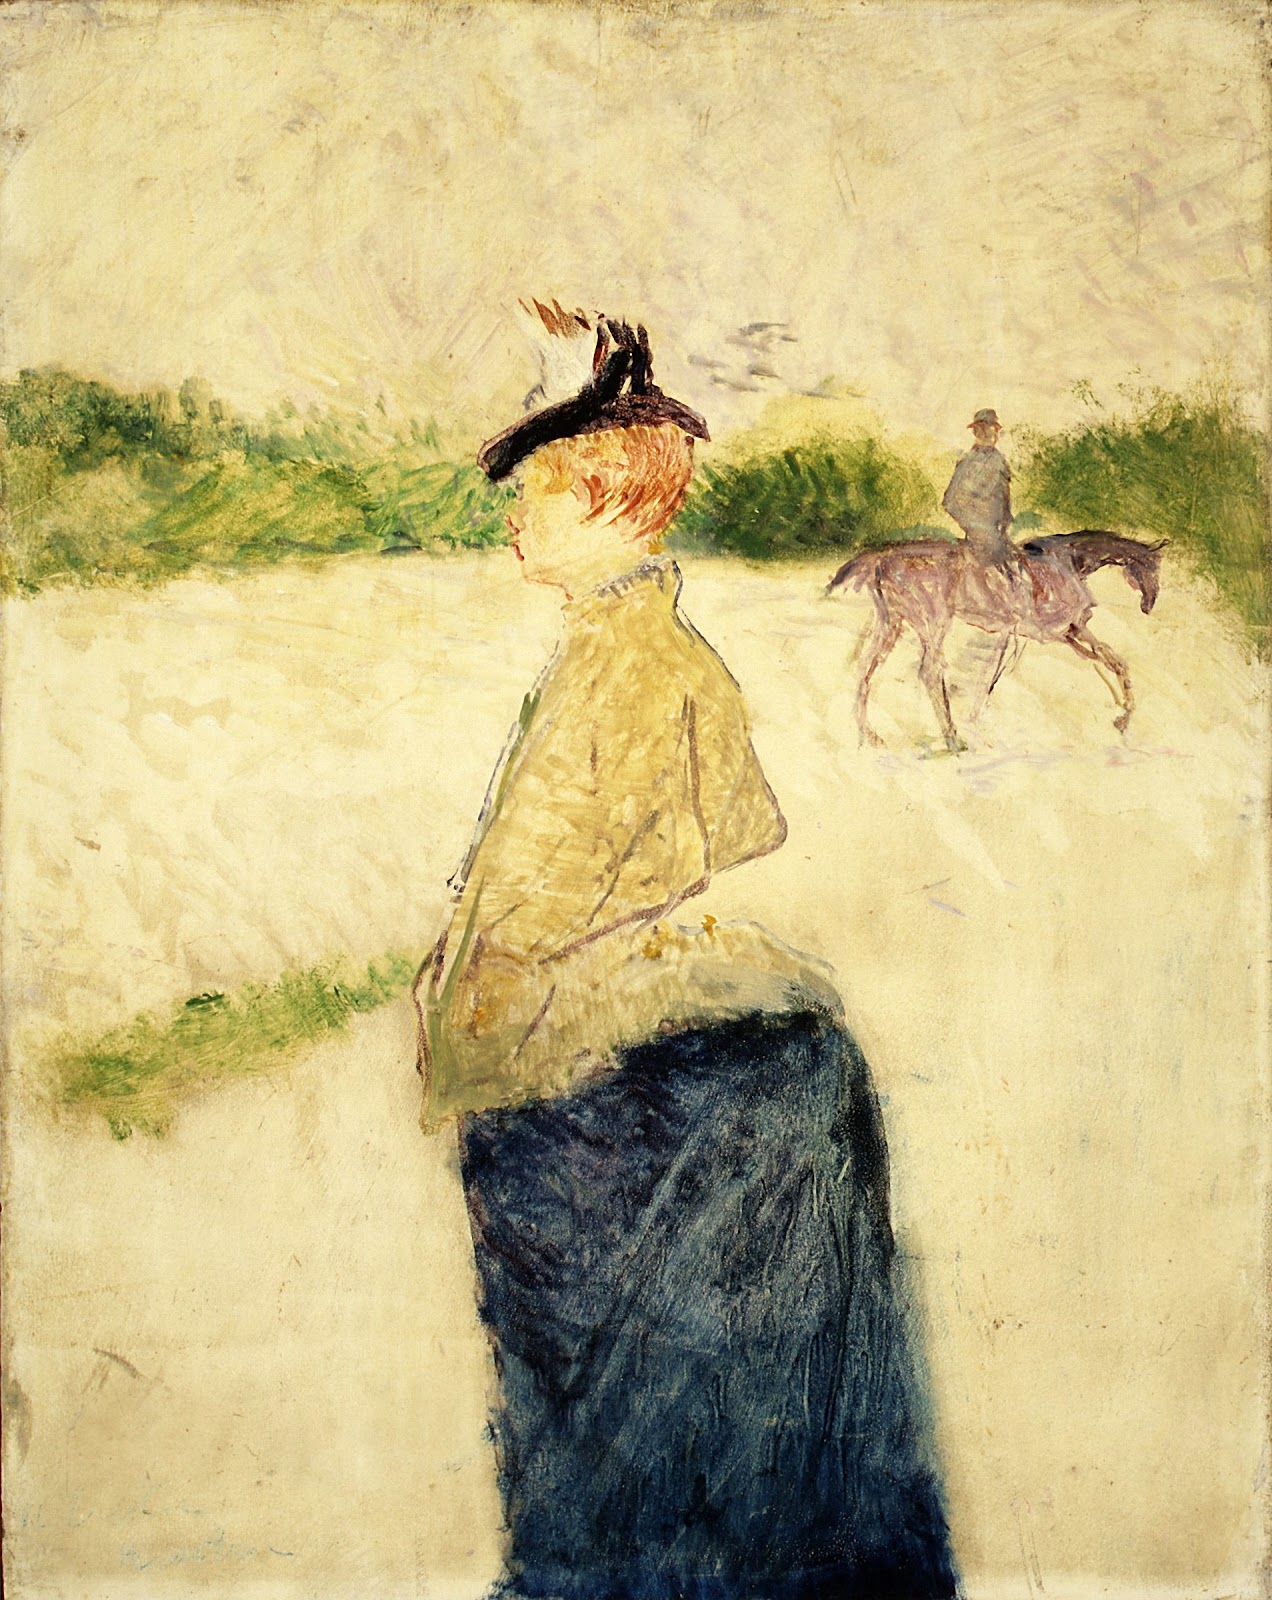 Henri+de+Toulouse+Lautrec-1864-1901 (87).jpg